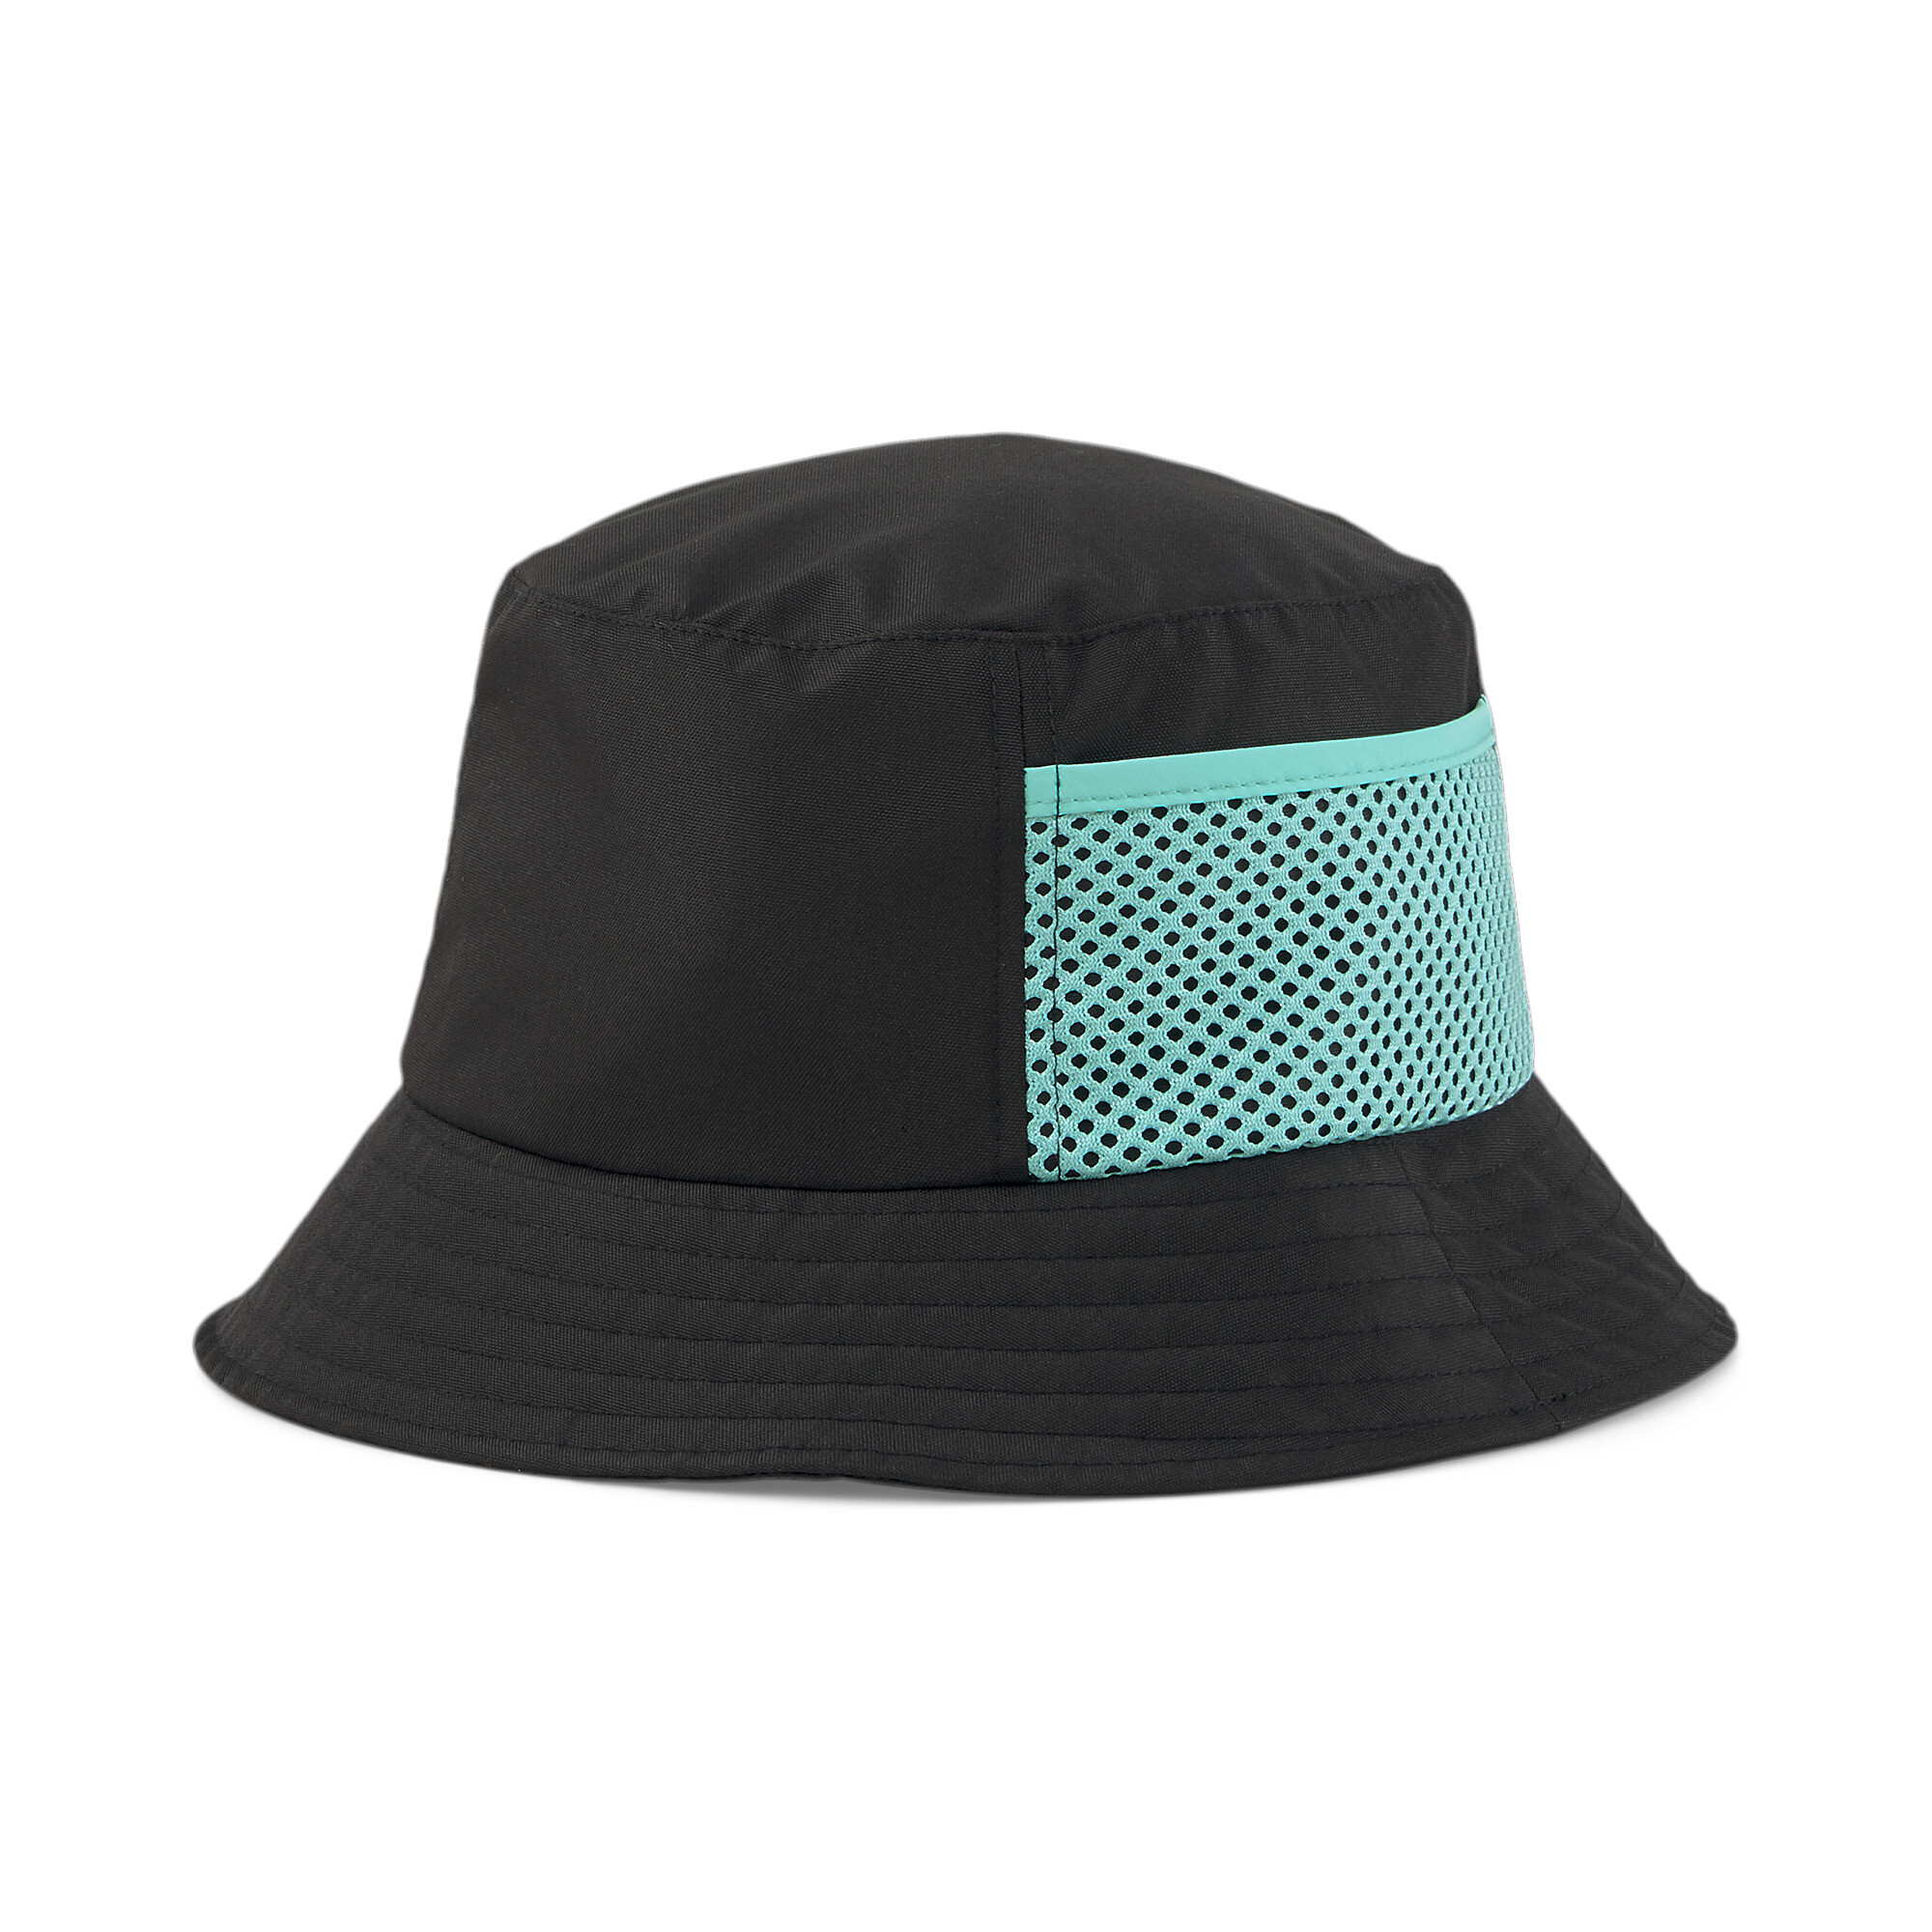 Men's PUMA X SPONGEBOB Bucket Hat In Black, Size Large